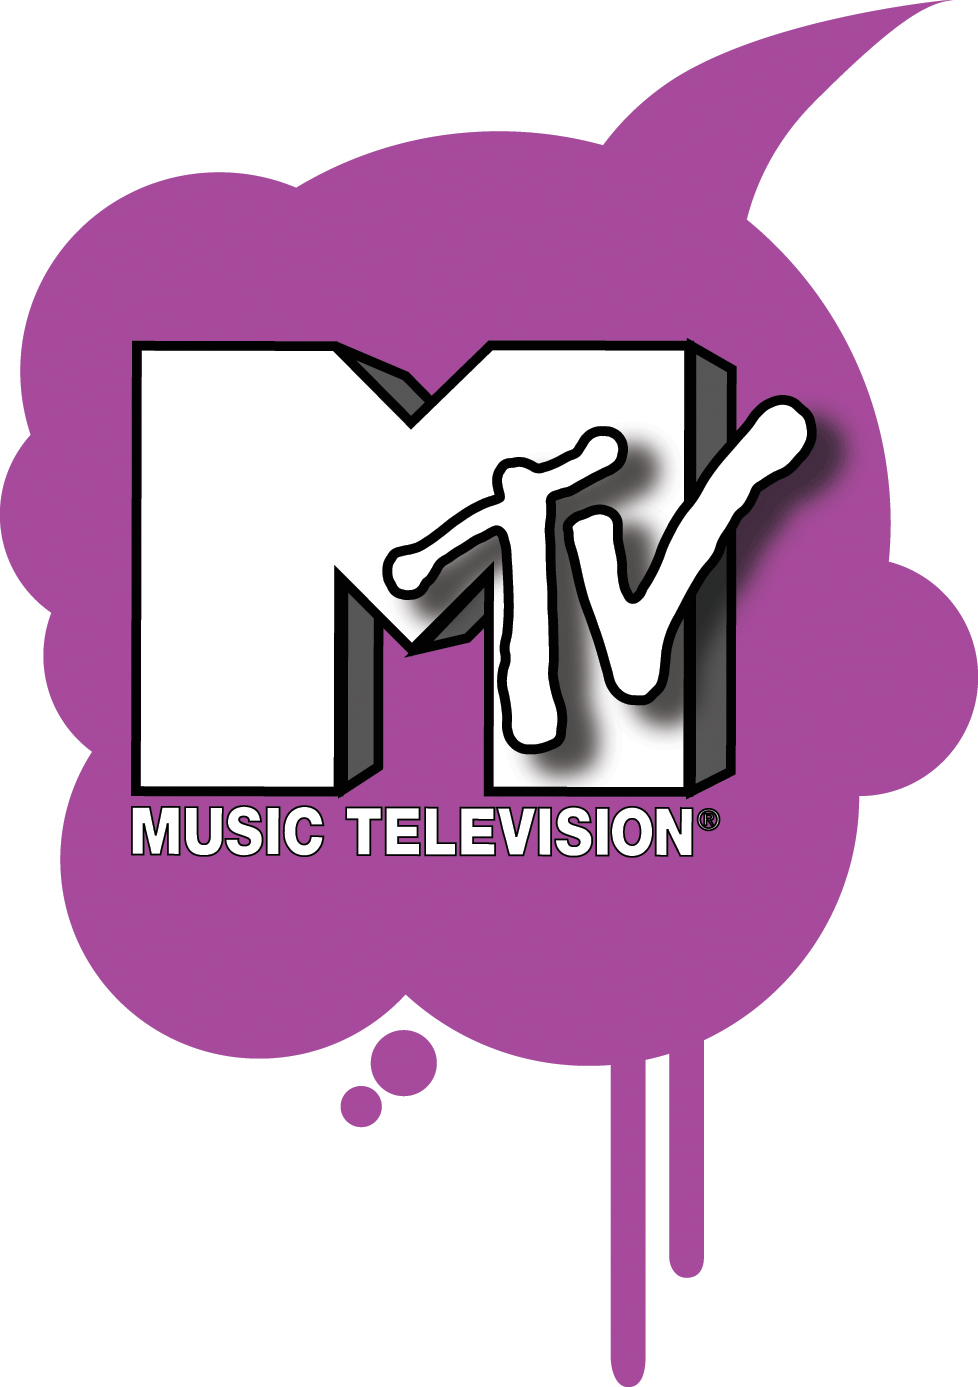 テレビ番組 Logomark Mania 世界のかわいいロゴマーク集 企業ロゴ